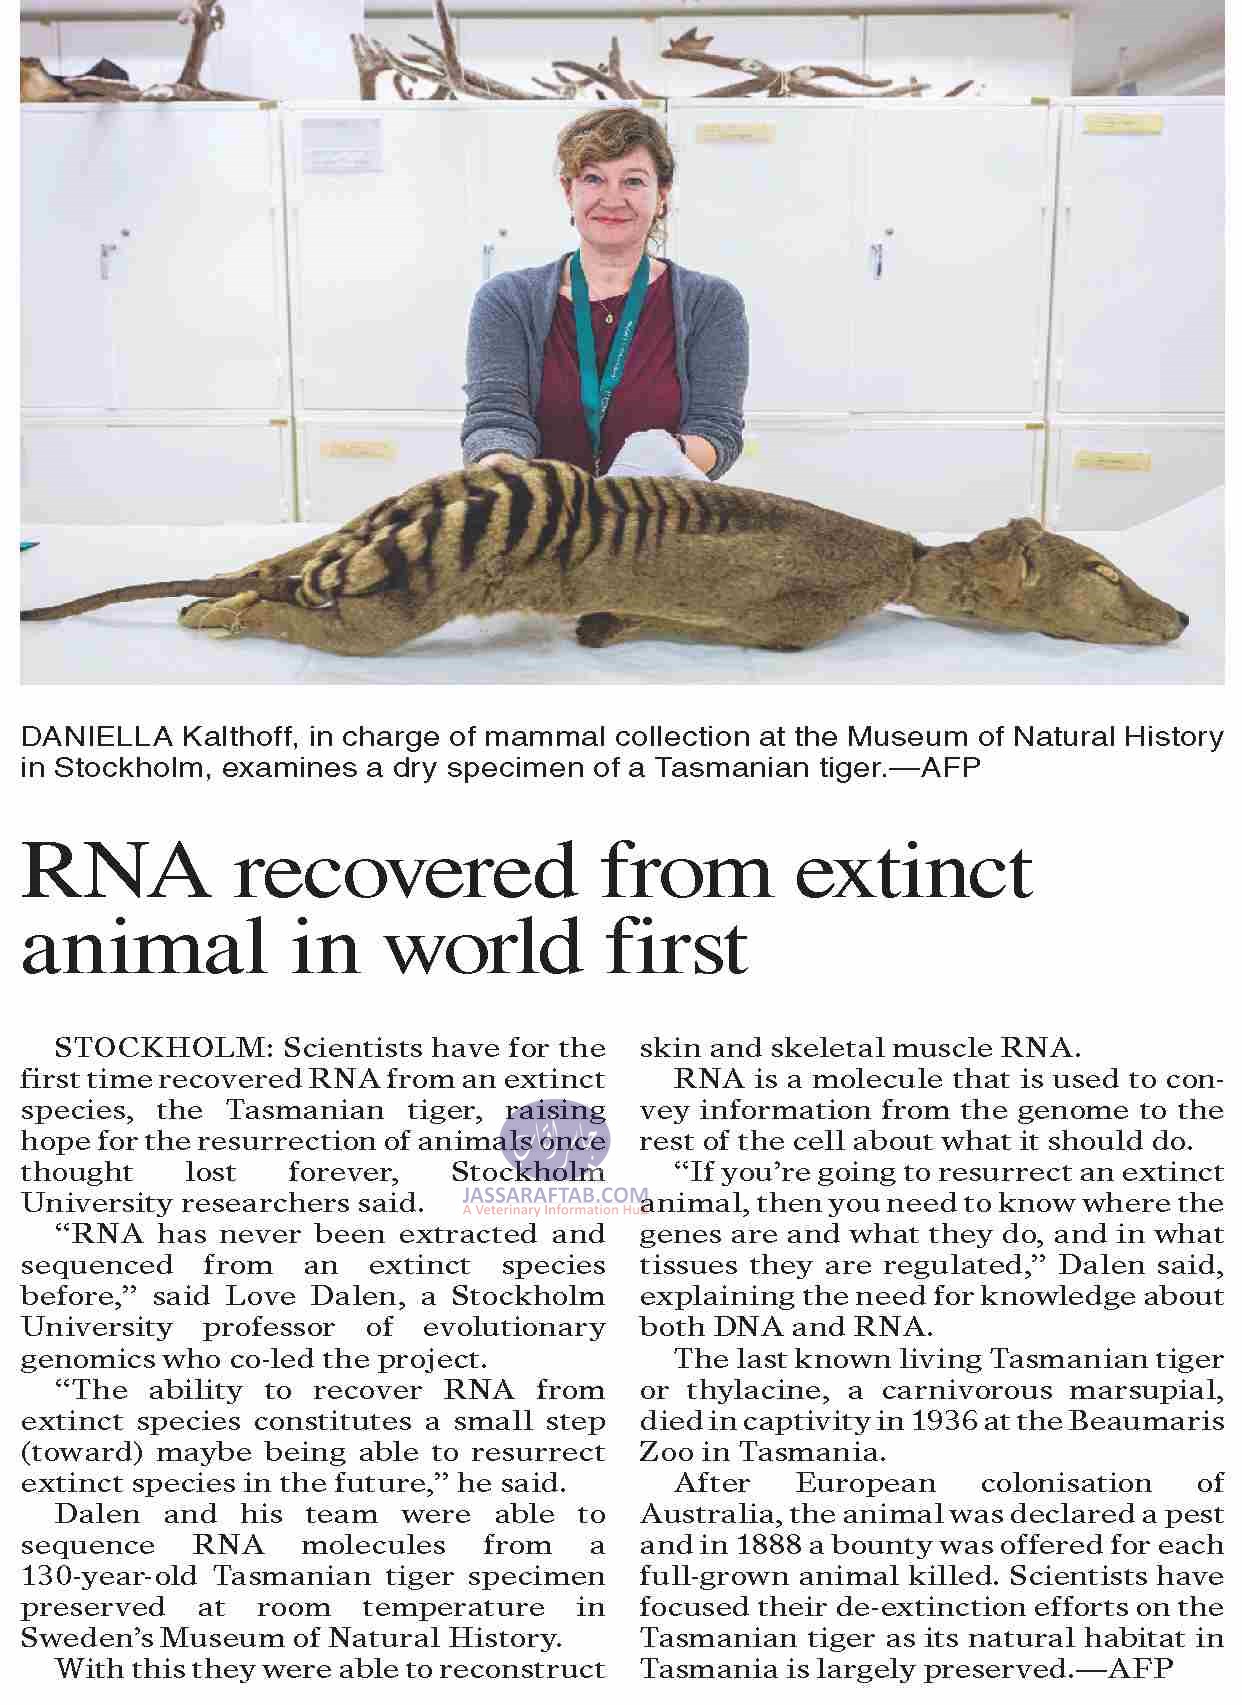 RNA recovered from Extinct Animal Tasmanian Tiger